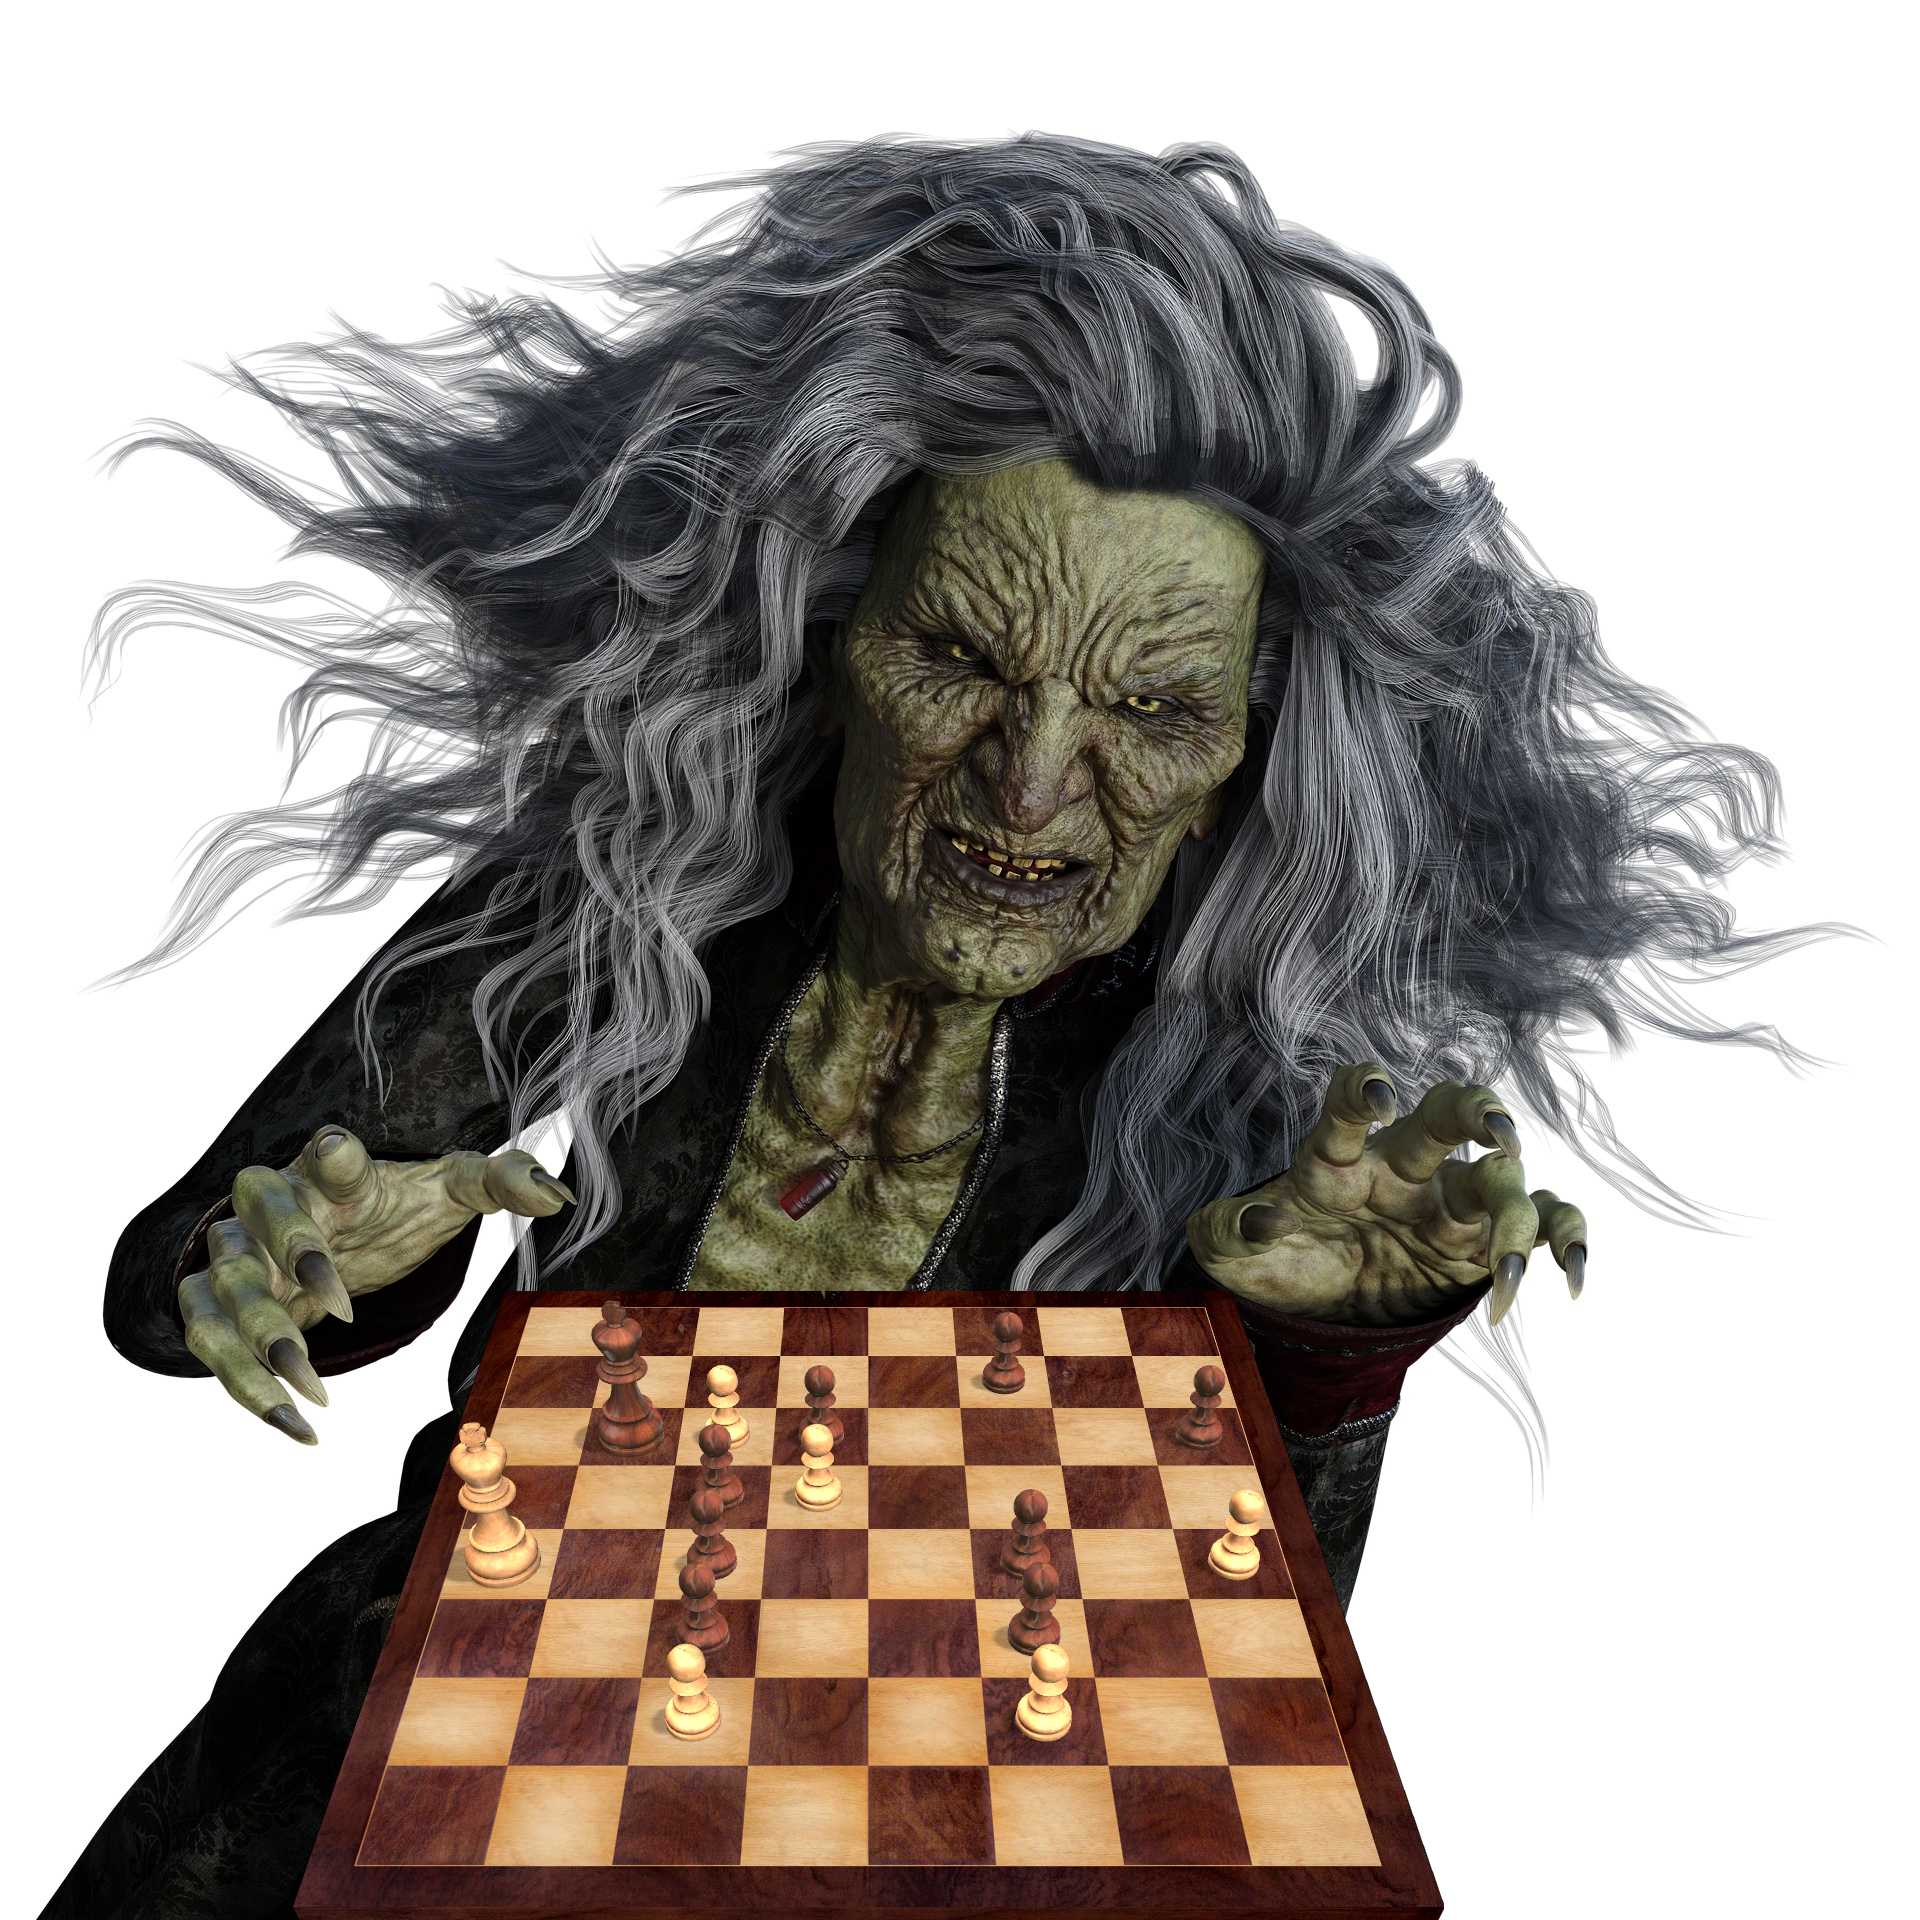 Halloween Hexe spielt Schach - Halloween Witch plays Chess - Oktober 2021 - Glarean Magazin